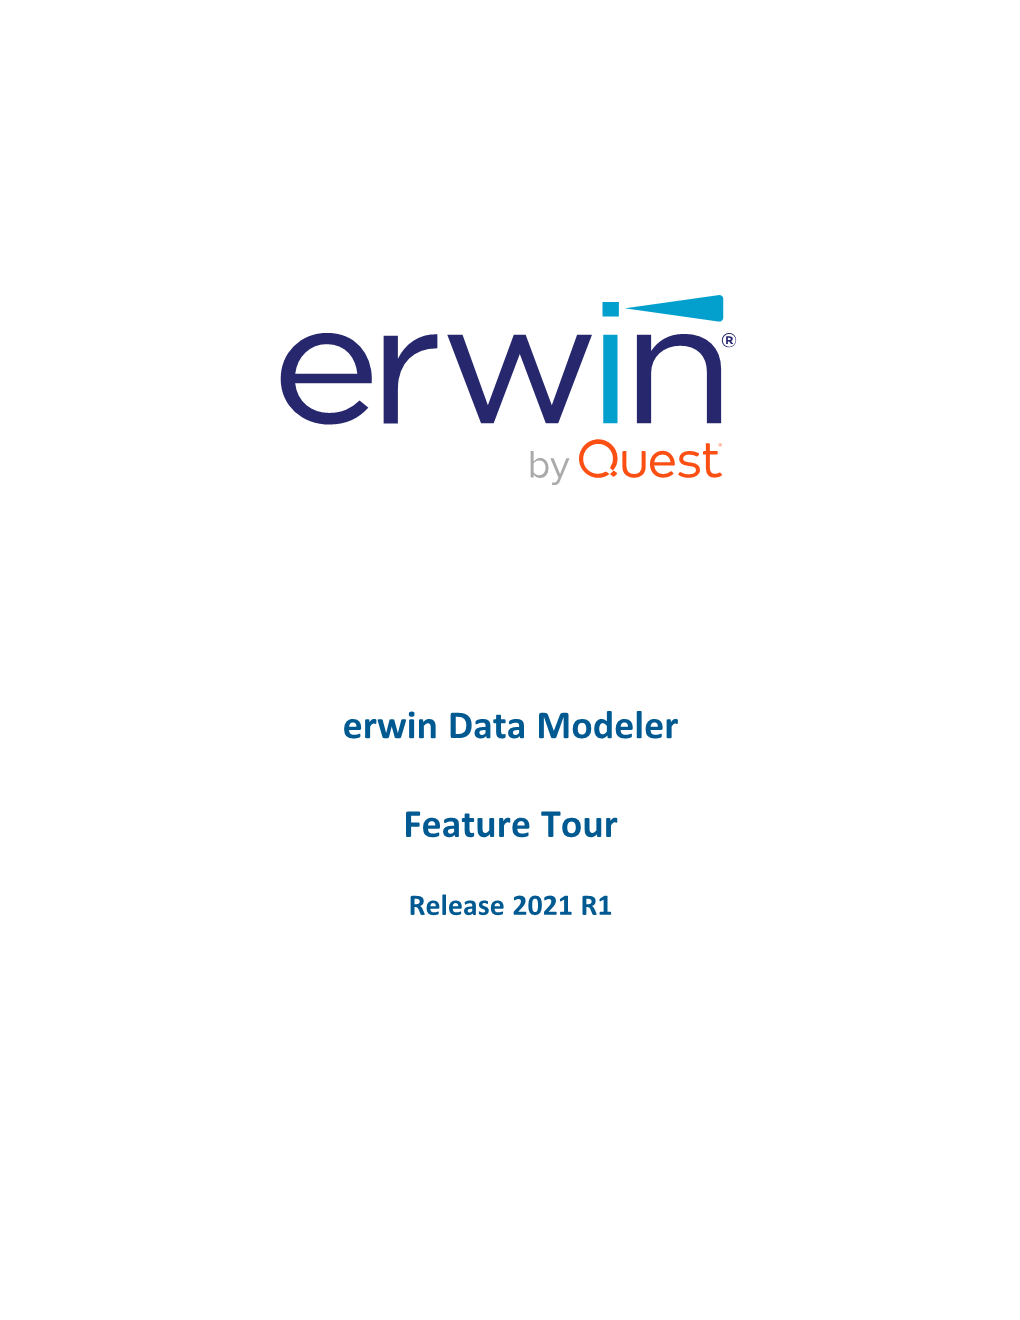 Erwin DM 2021R1 Feature Tour